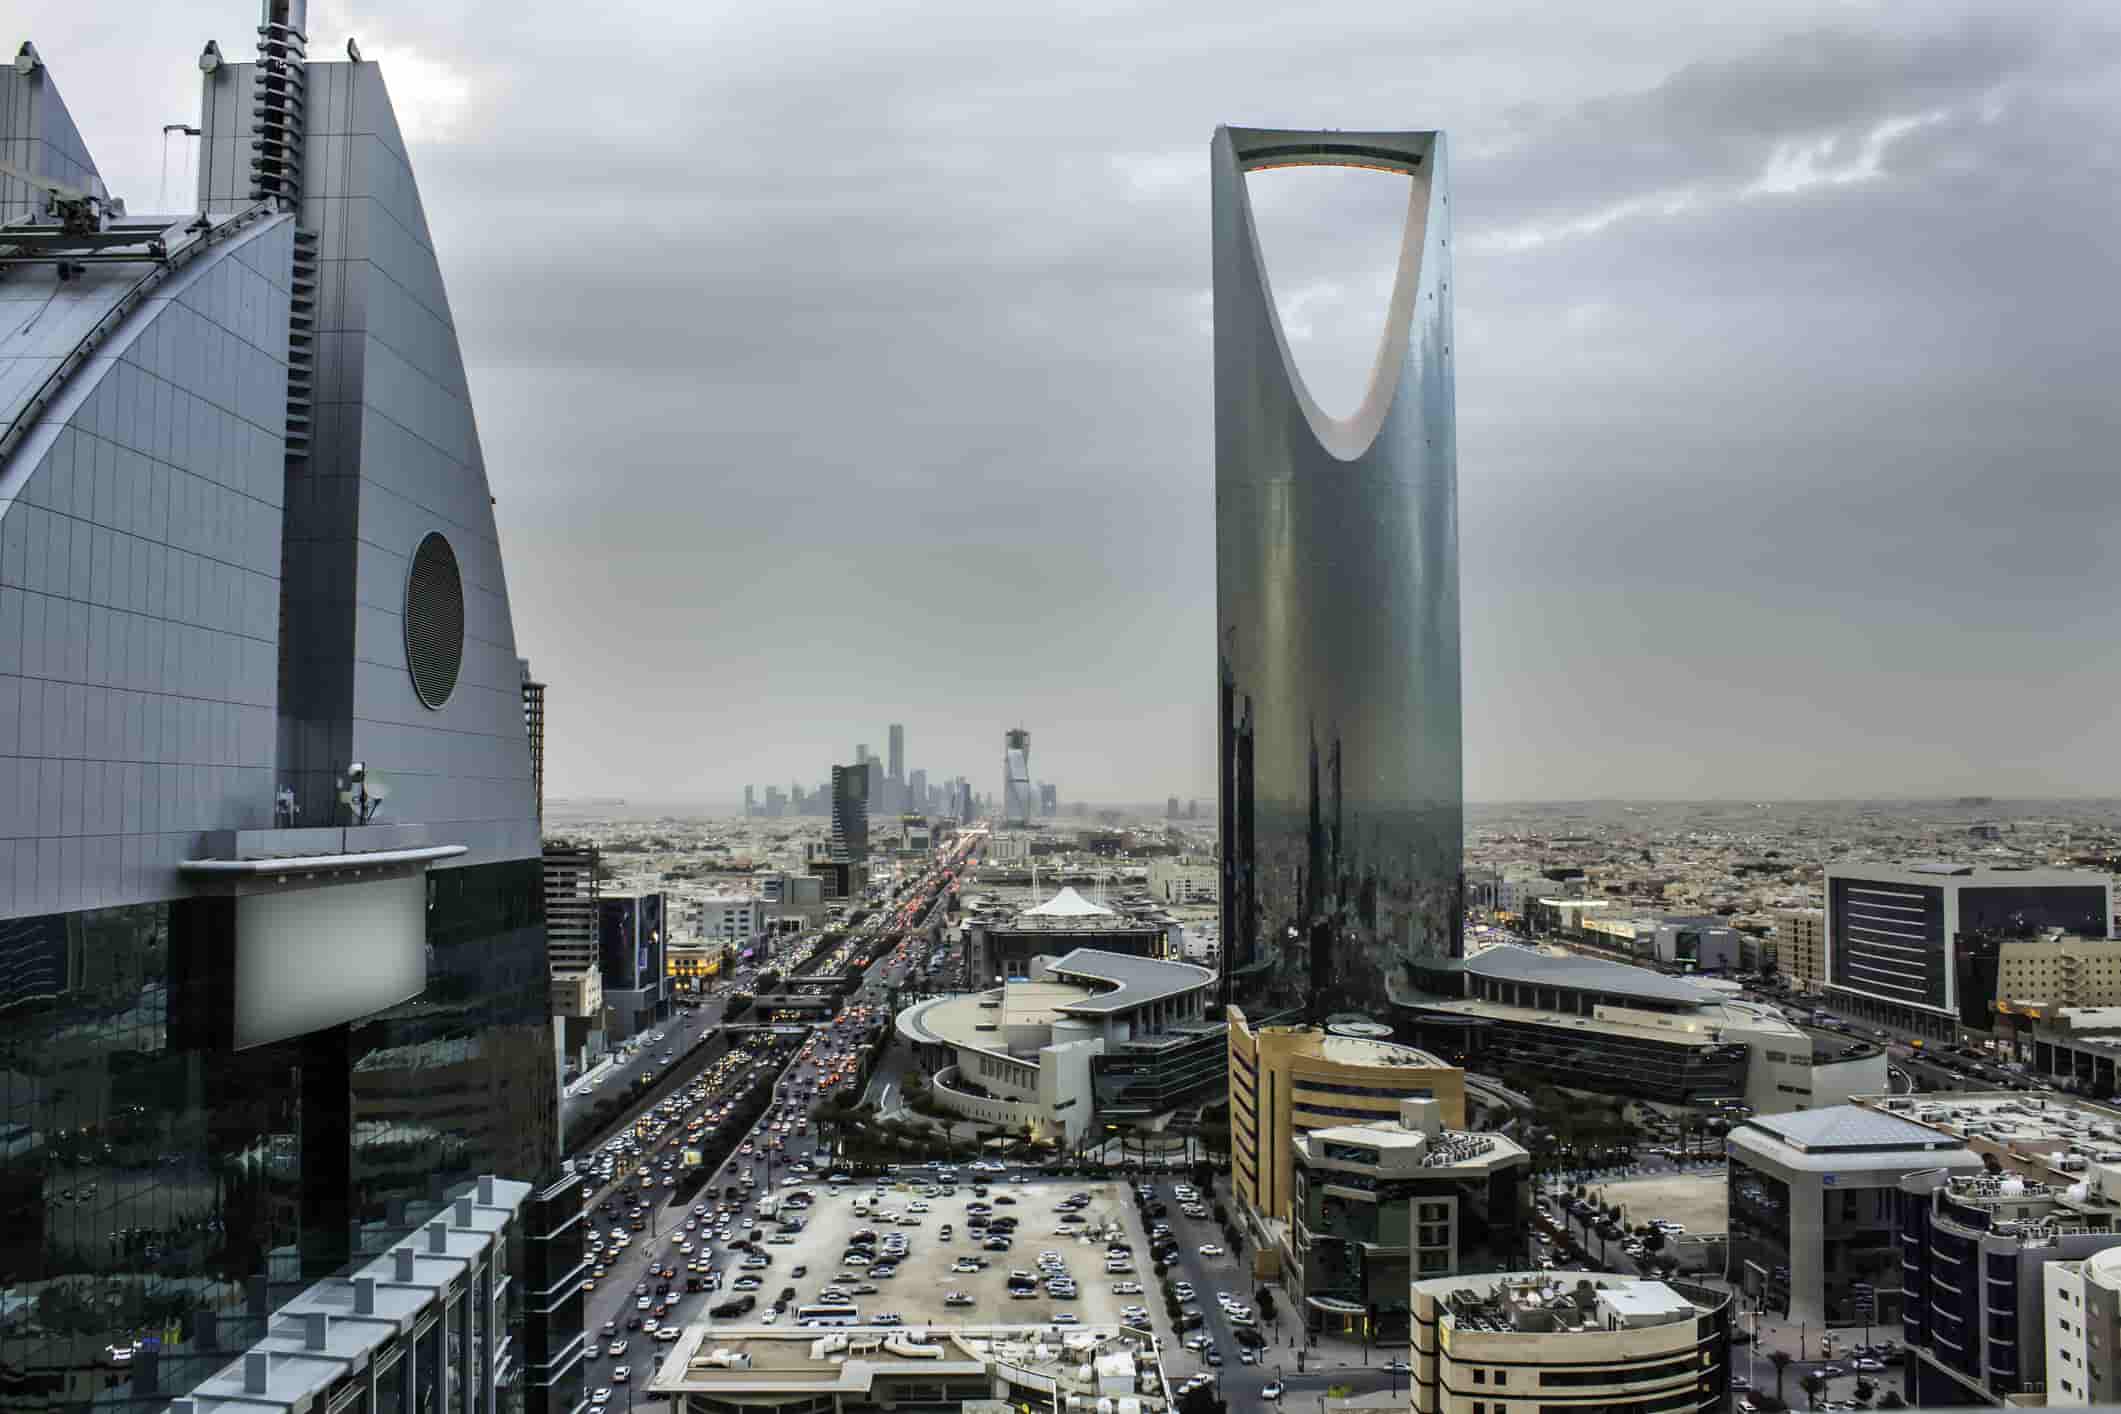 city buildings in Saudi Arabia